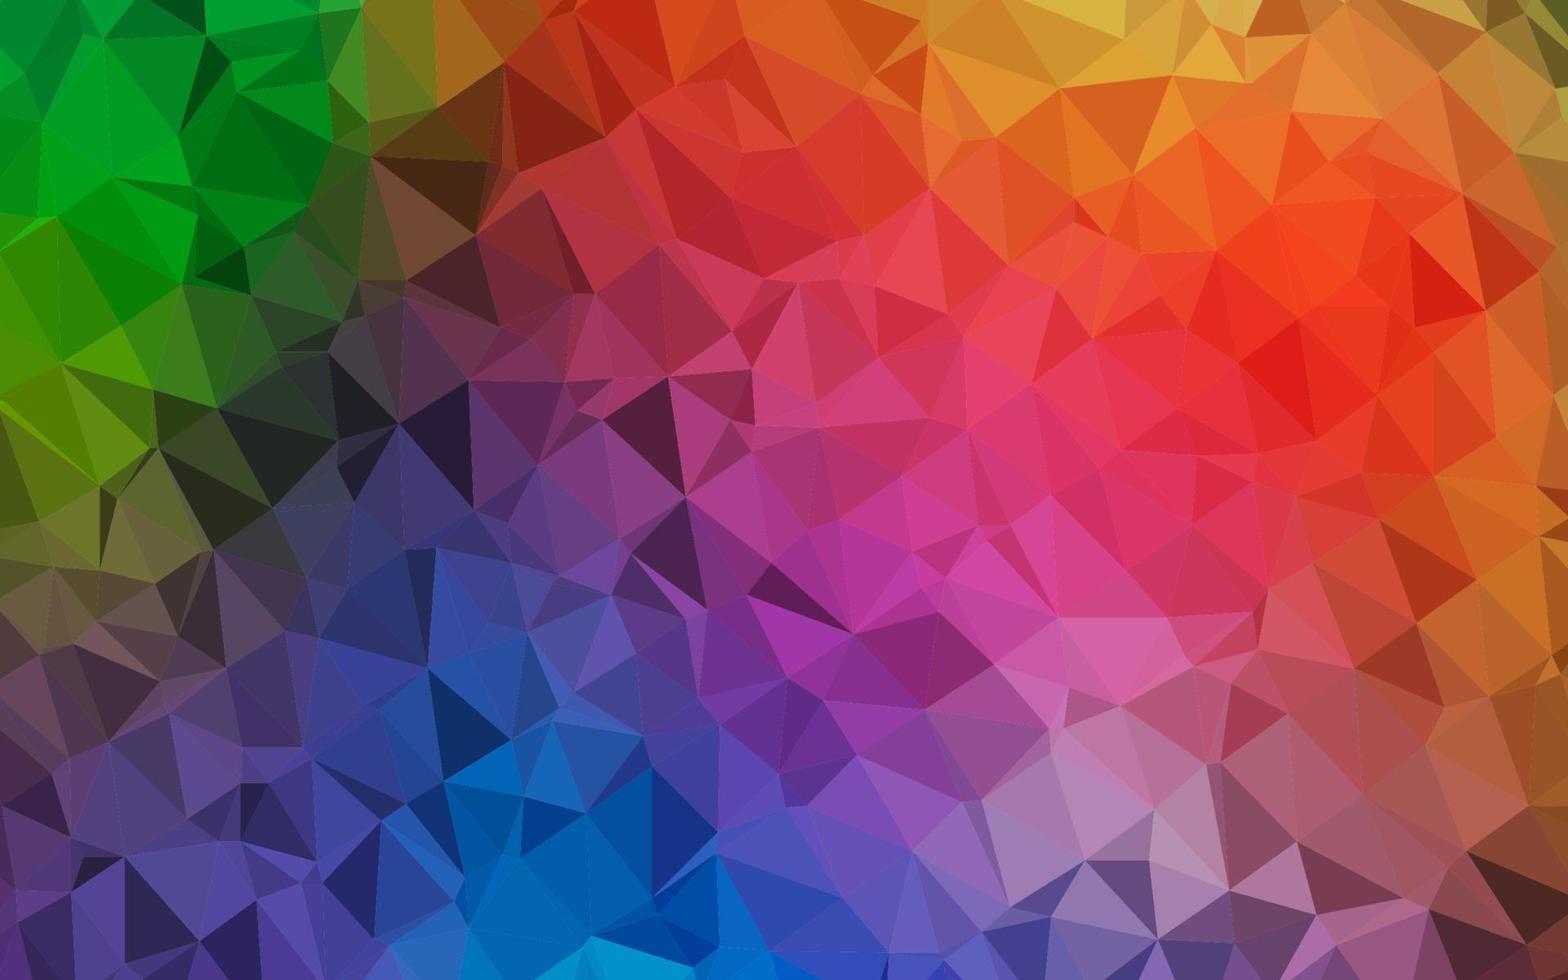 helles mehrfarbiges, abstraktes polygonales Layout des Regenbogenvektors. vektor